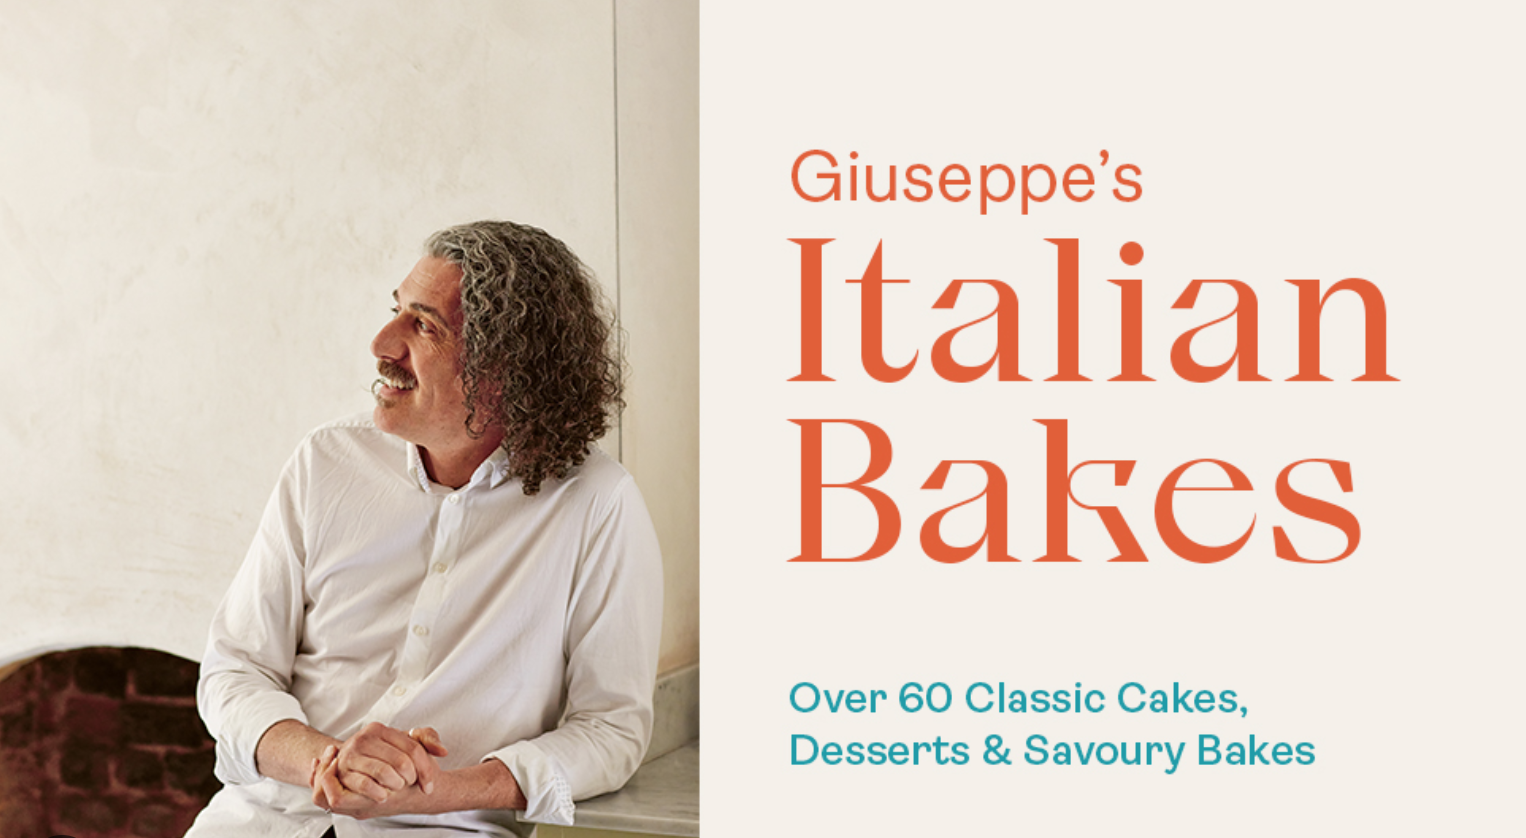 Book review – Giuseppe’s Italian Bakes